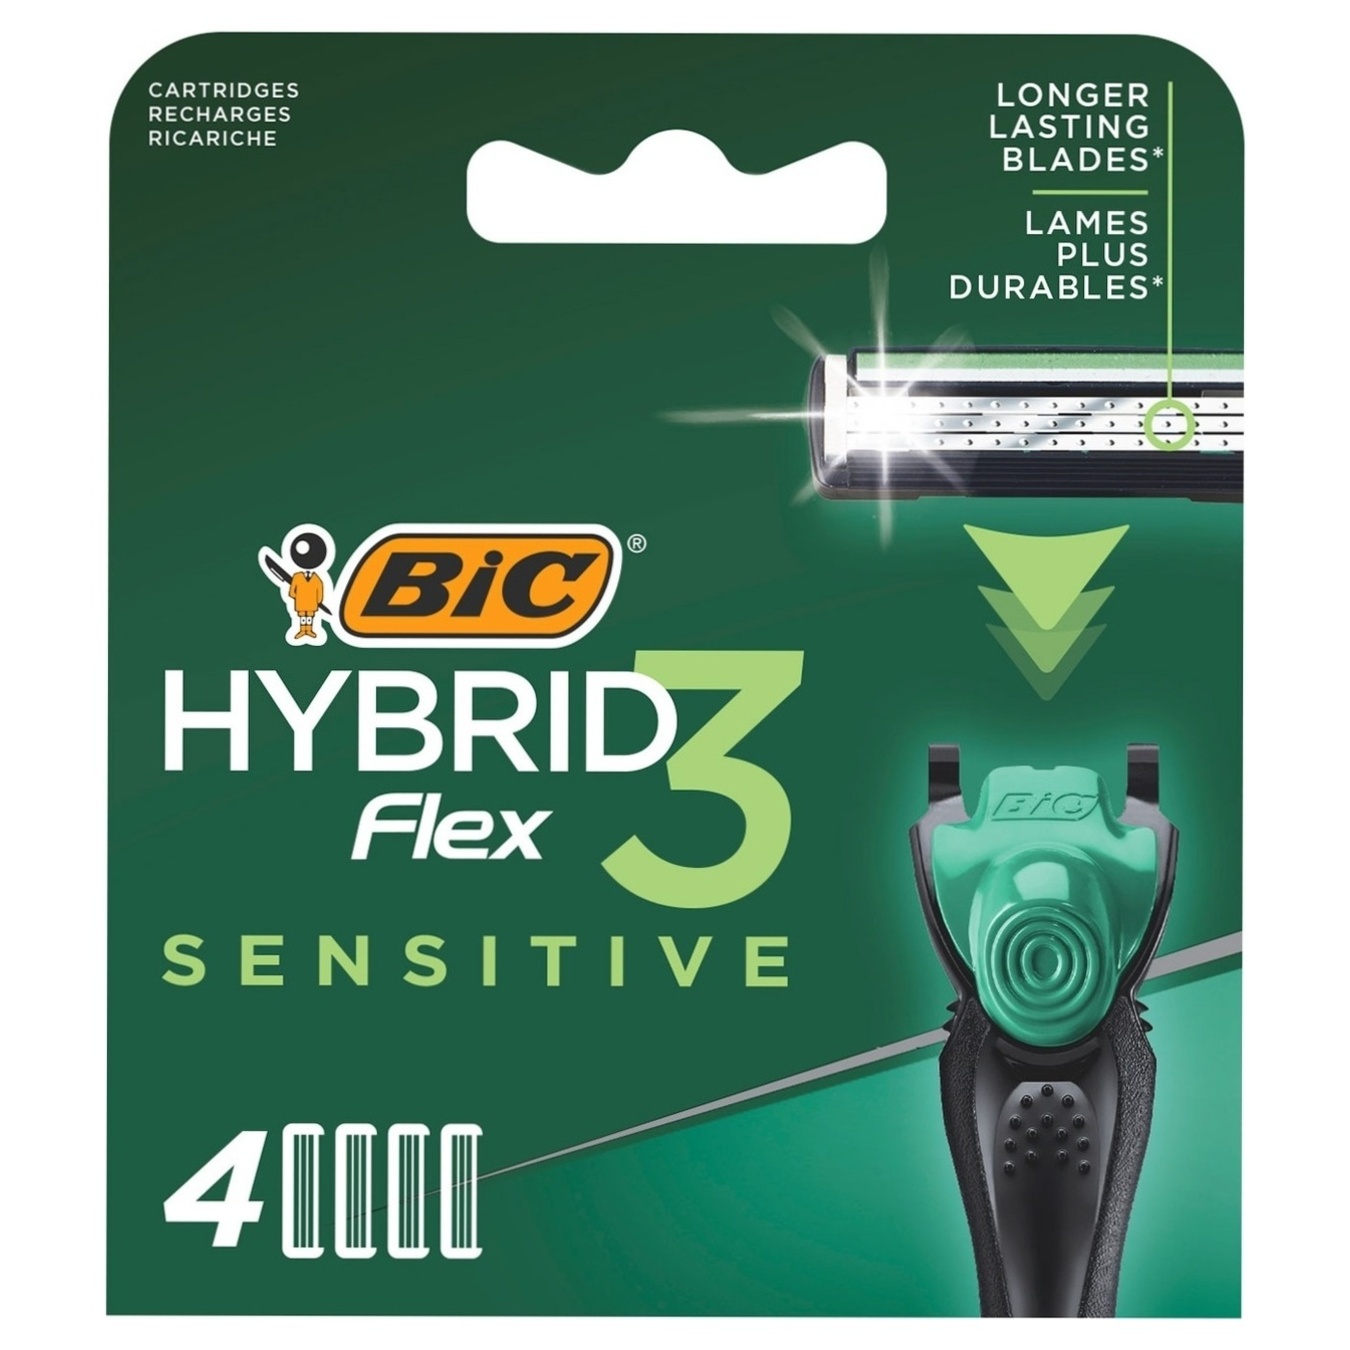 Картрдж для бритья BIC гибрид 3 флекс блистер 4шт